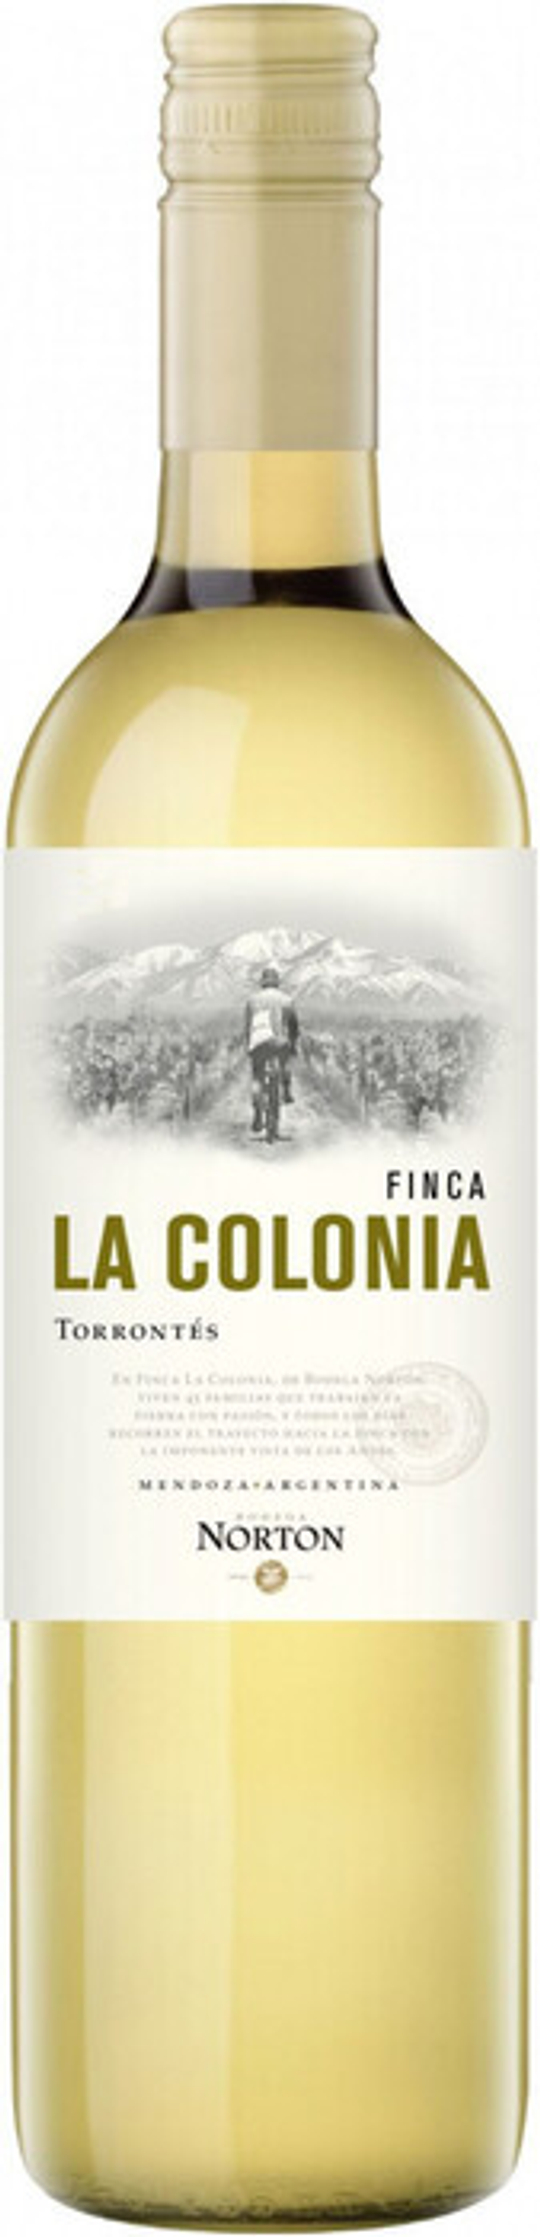 Вино Norton Finca La Colonia Torrontes, 0,75 л.